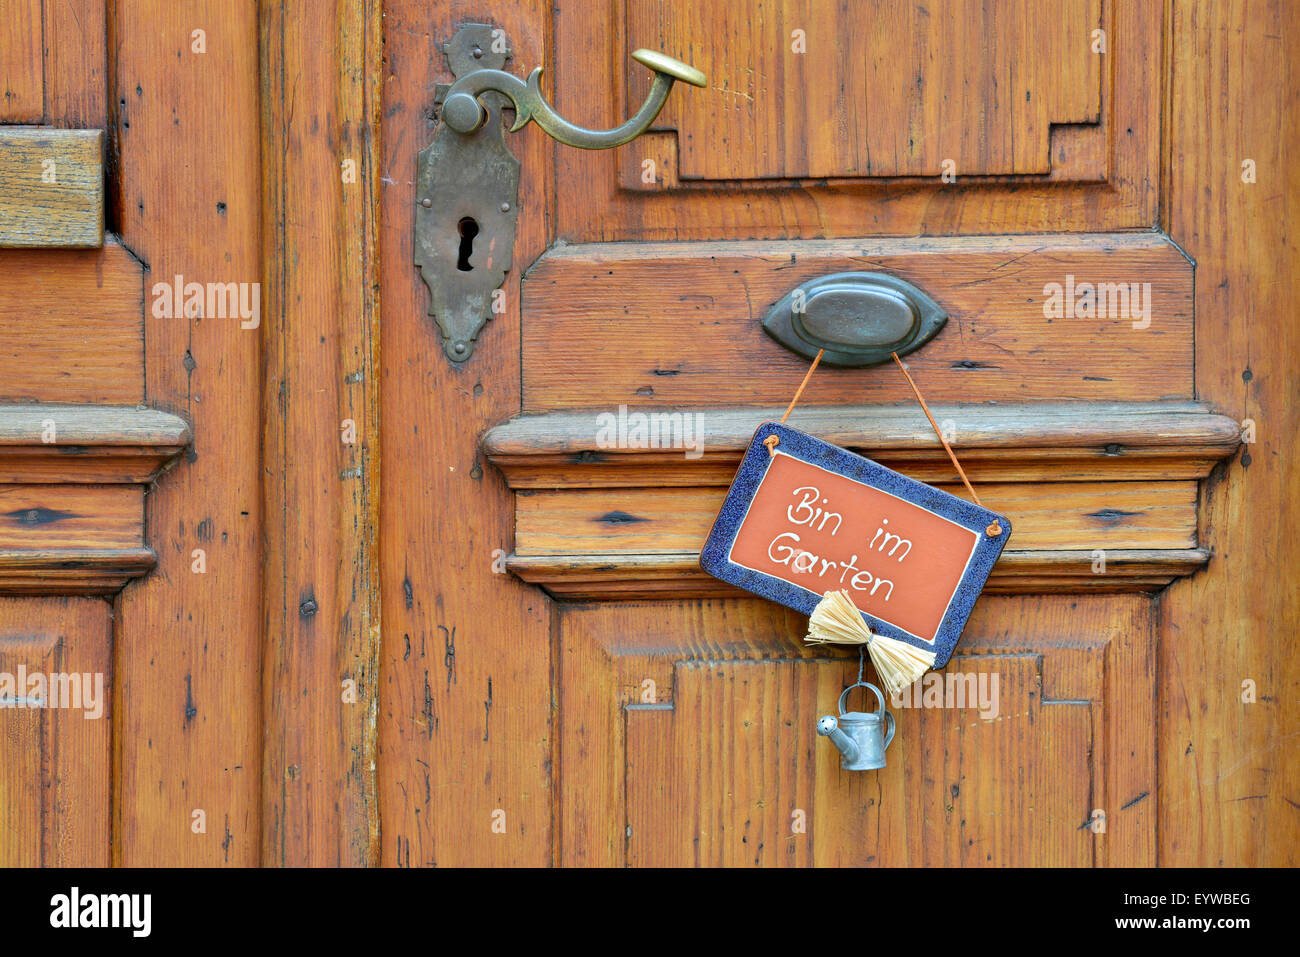 Wooden door with sign saying 'Bin im Garten', German for 'I'm in the garden', Baden-Württemberg, Deutschland Stock Photo